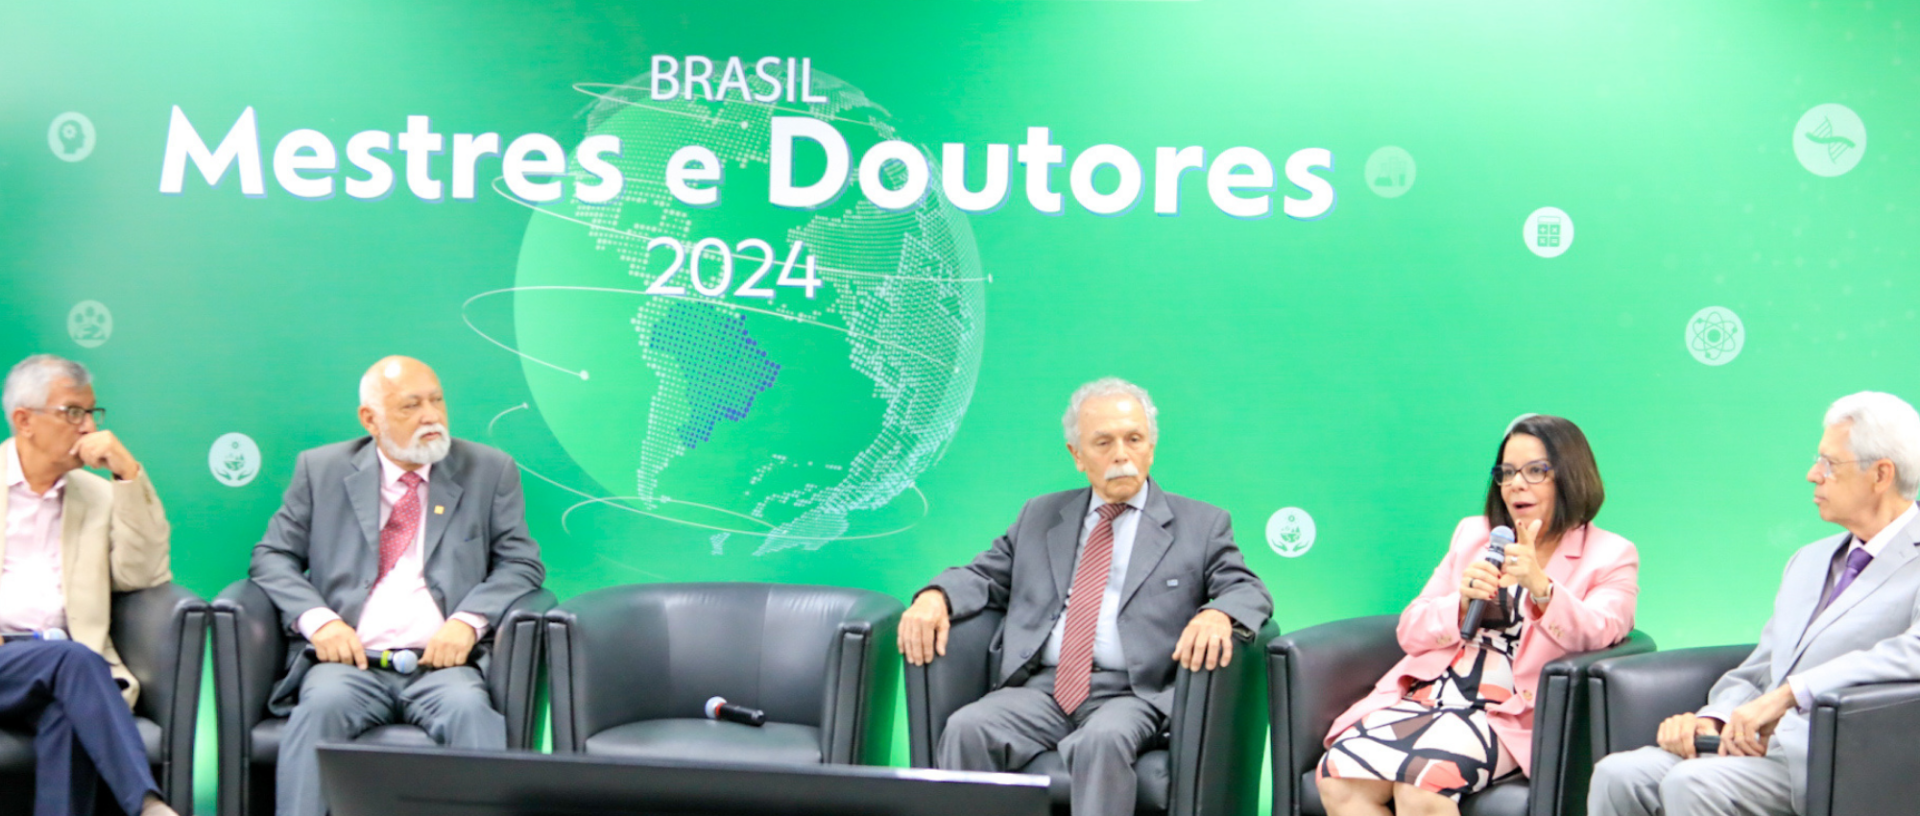 Brasil forma mais de um milhão de mestres e doutores em 25 anos
